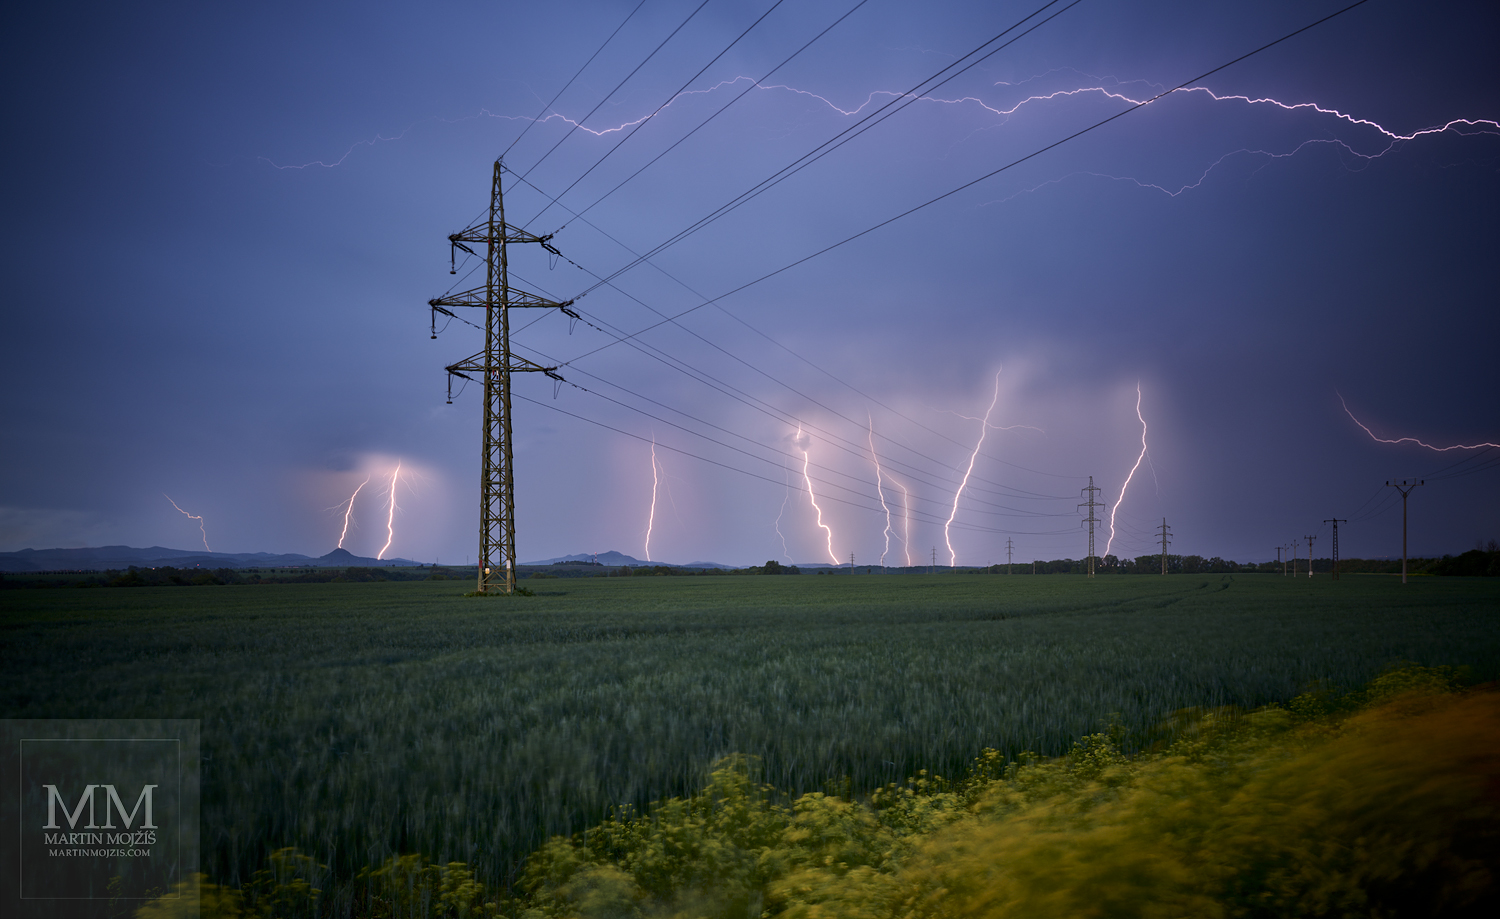 Krajina při bouři, elektrické vedení, mnoho blesků. Umělecká velkoformátová fotografie Energie pozdního jara. Fotograf Martin Mojžíš.